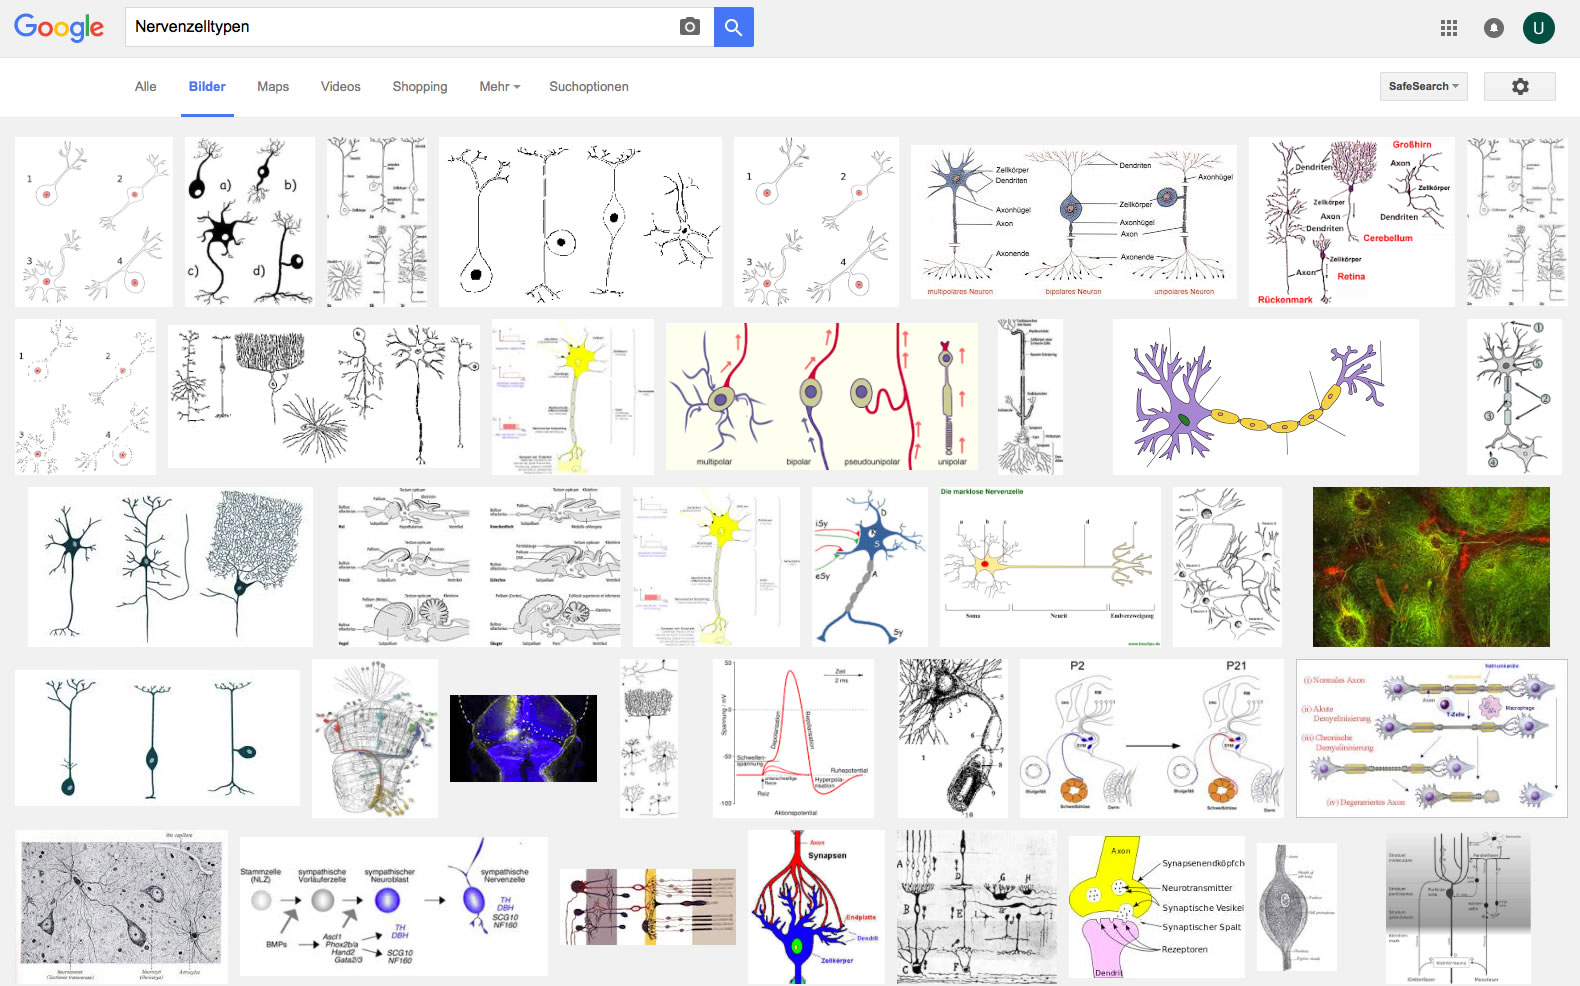 Ergebnis einer Google-Bildersuche mit dem Stichwort "Nervenzelltypen"